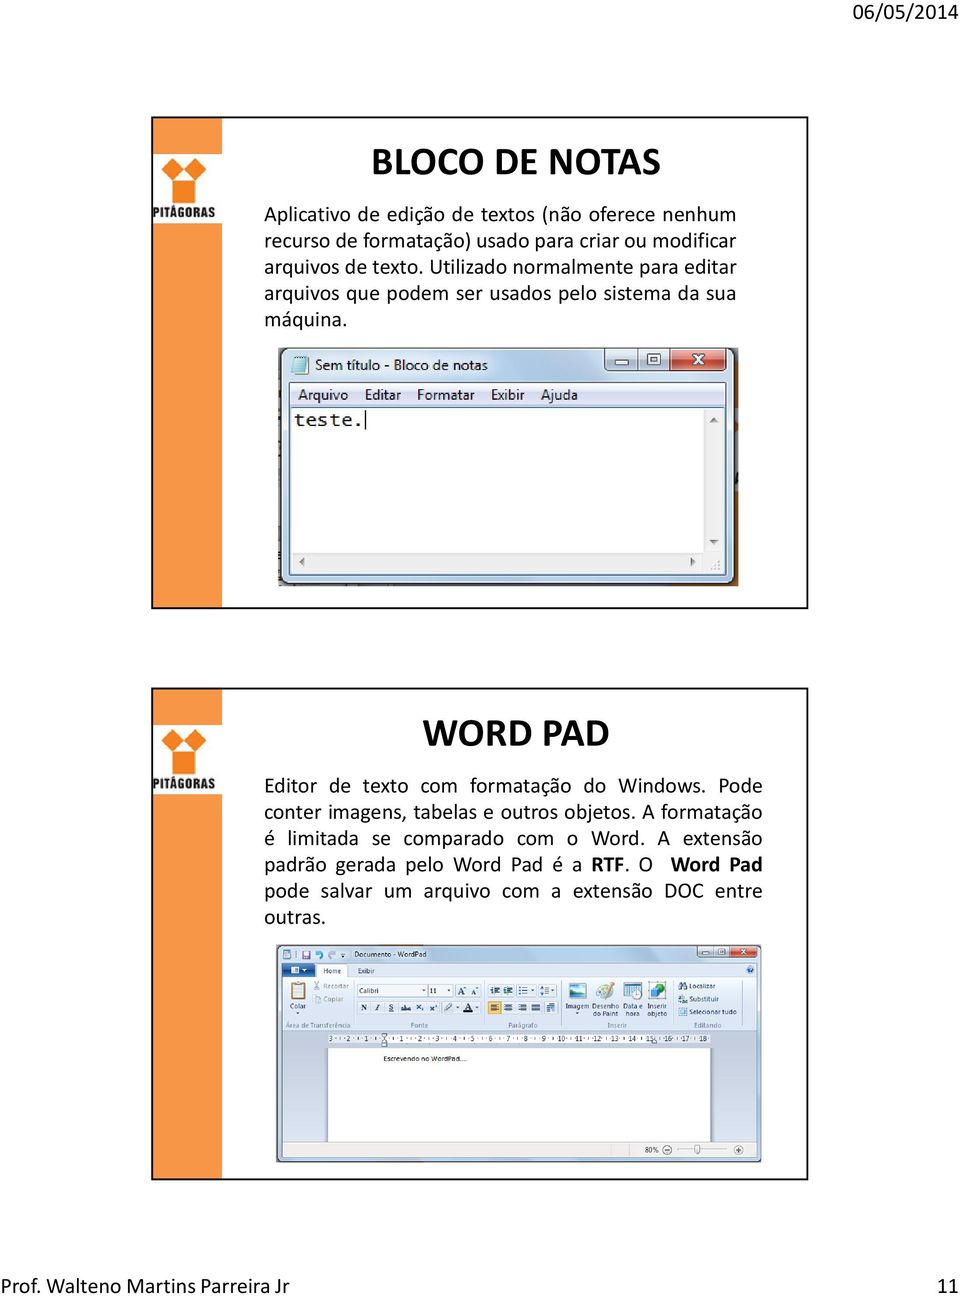 WORD PAD Editor de texto com formatação do Windows. Pode conter imagens, tabelas e outros objetos.